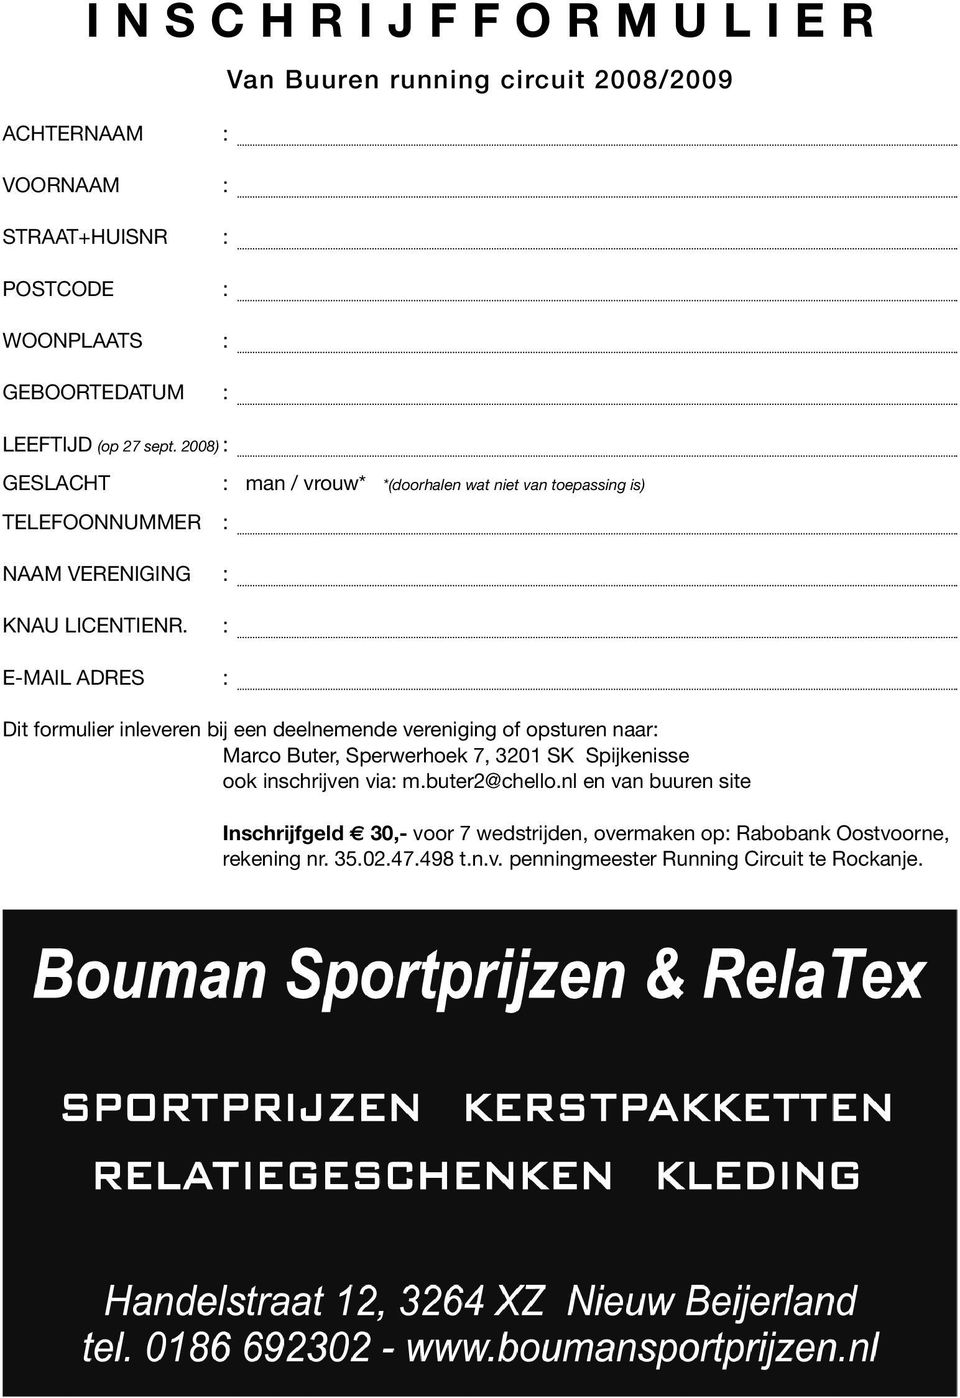 : E-MAIL ADRES : Dit formulier inleveren bij een deelnemende vereniging of opsturen naar: Marco Buter, Sperwerhoek 7, 3201 SK Spijkenisse ook inschrijven via: m.